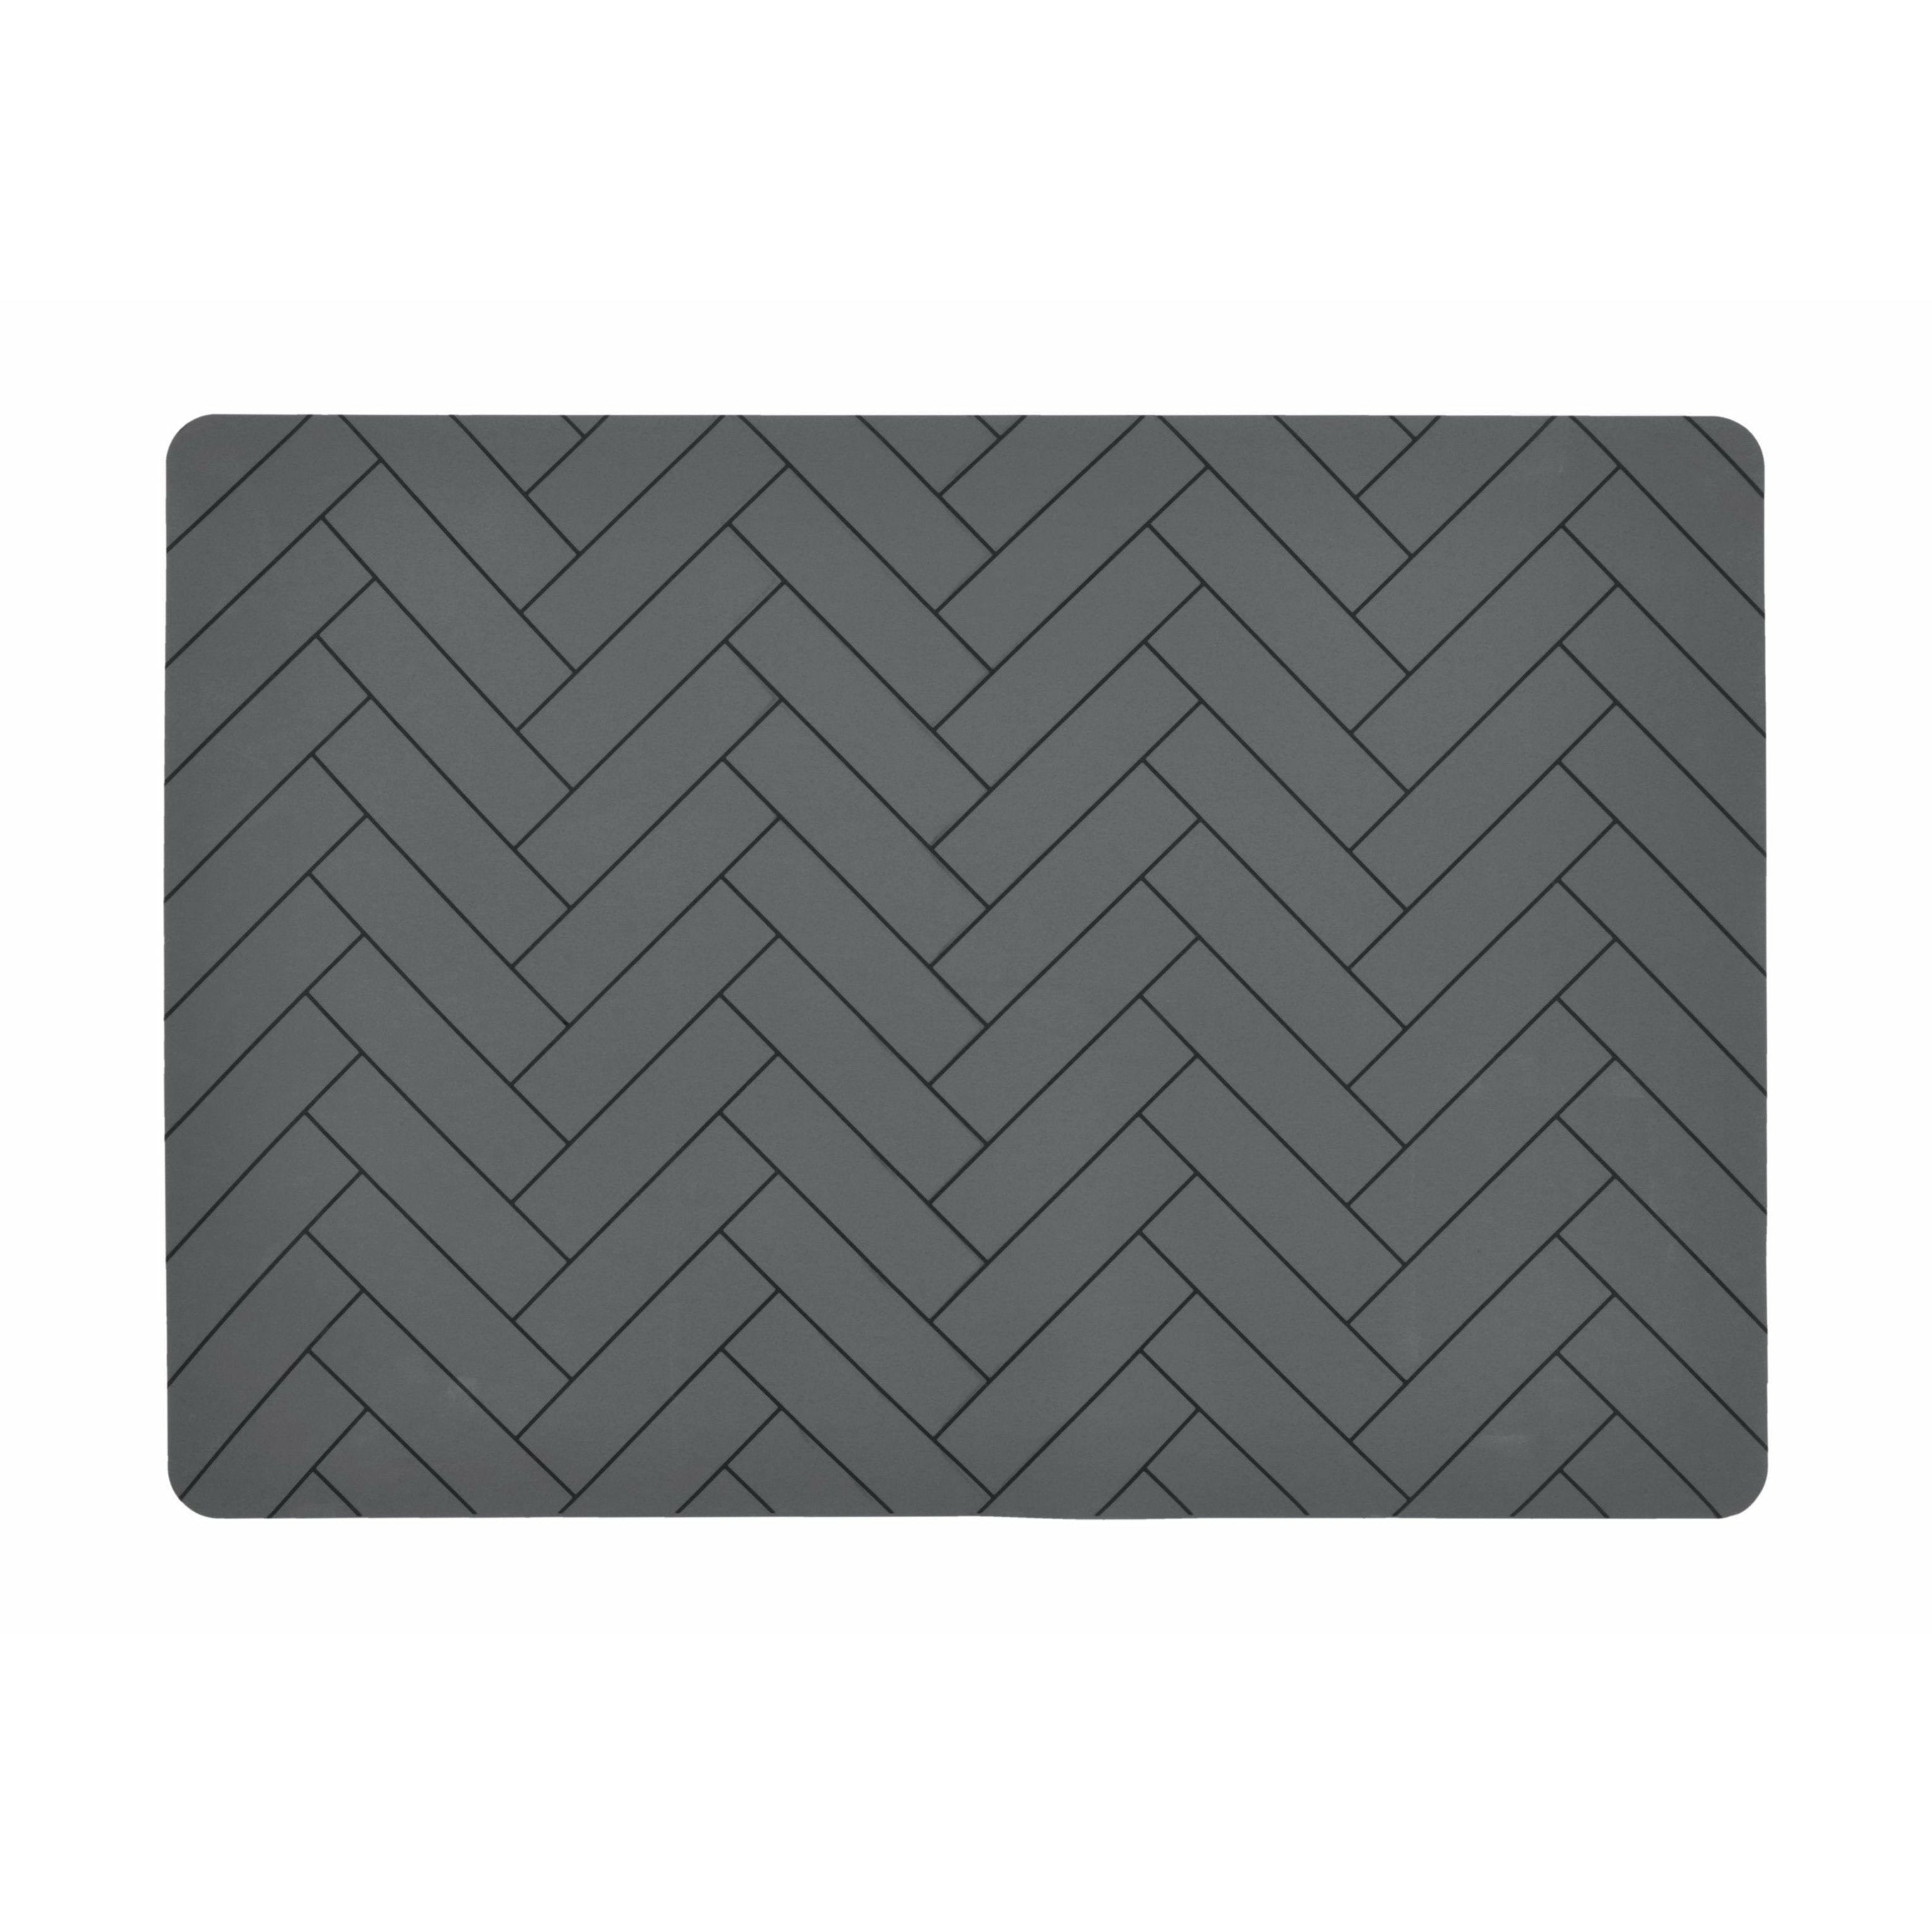 Södahl Plattor placemat 33x48, grå